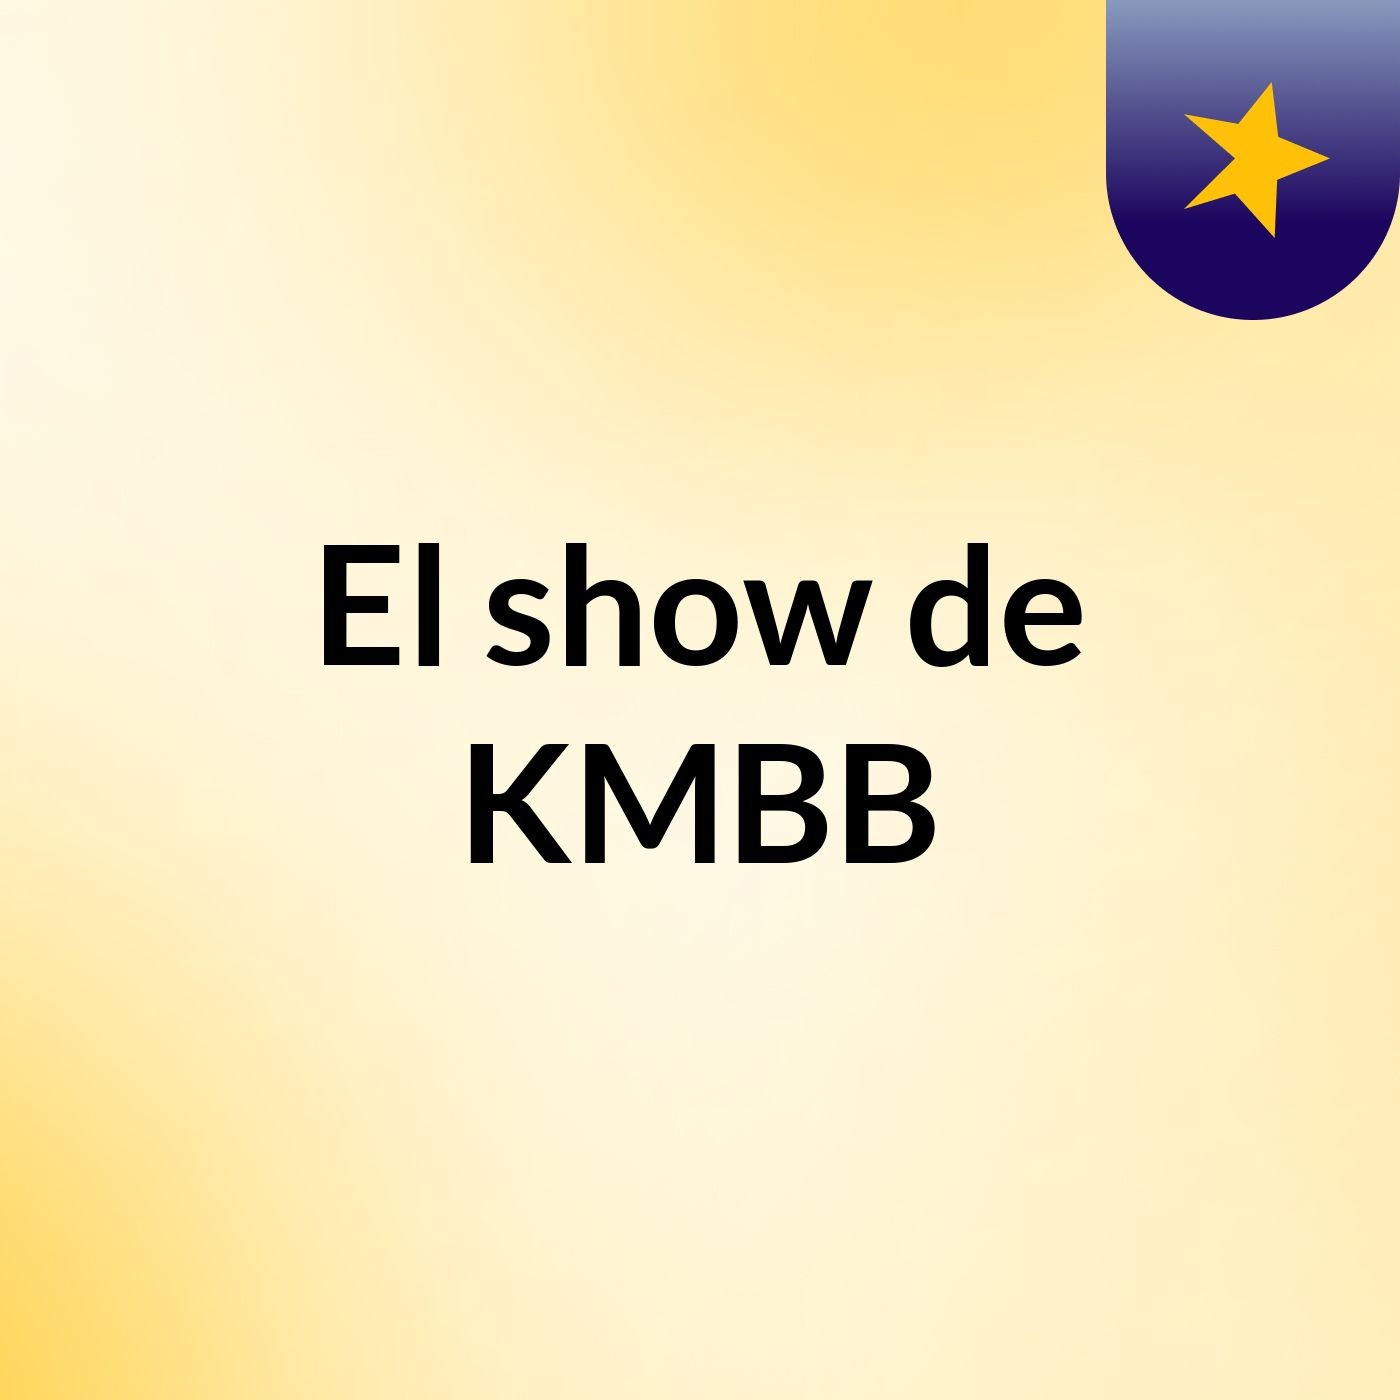 El show de KMBB